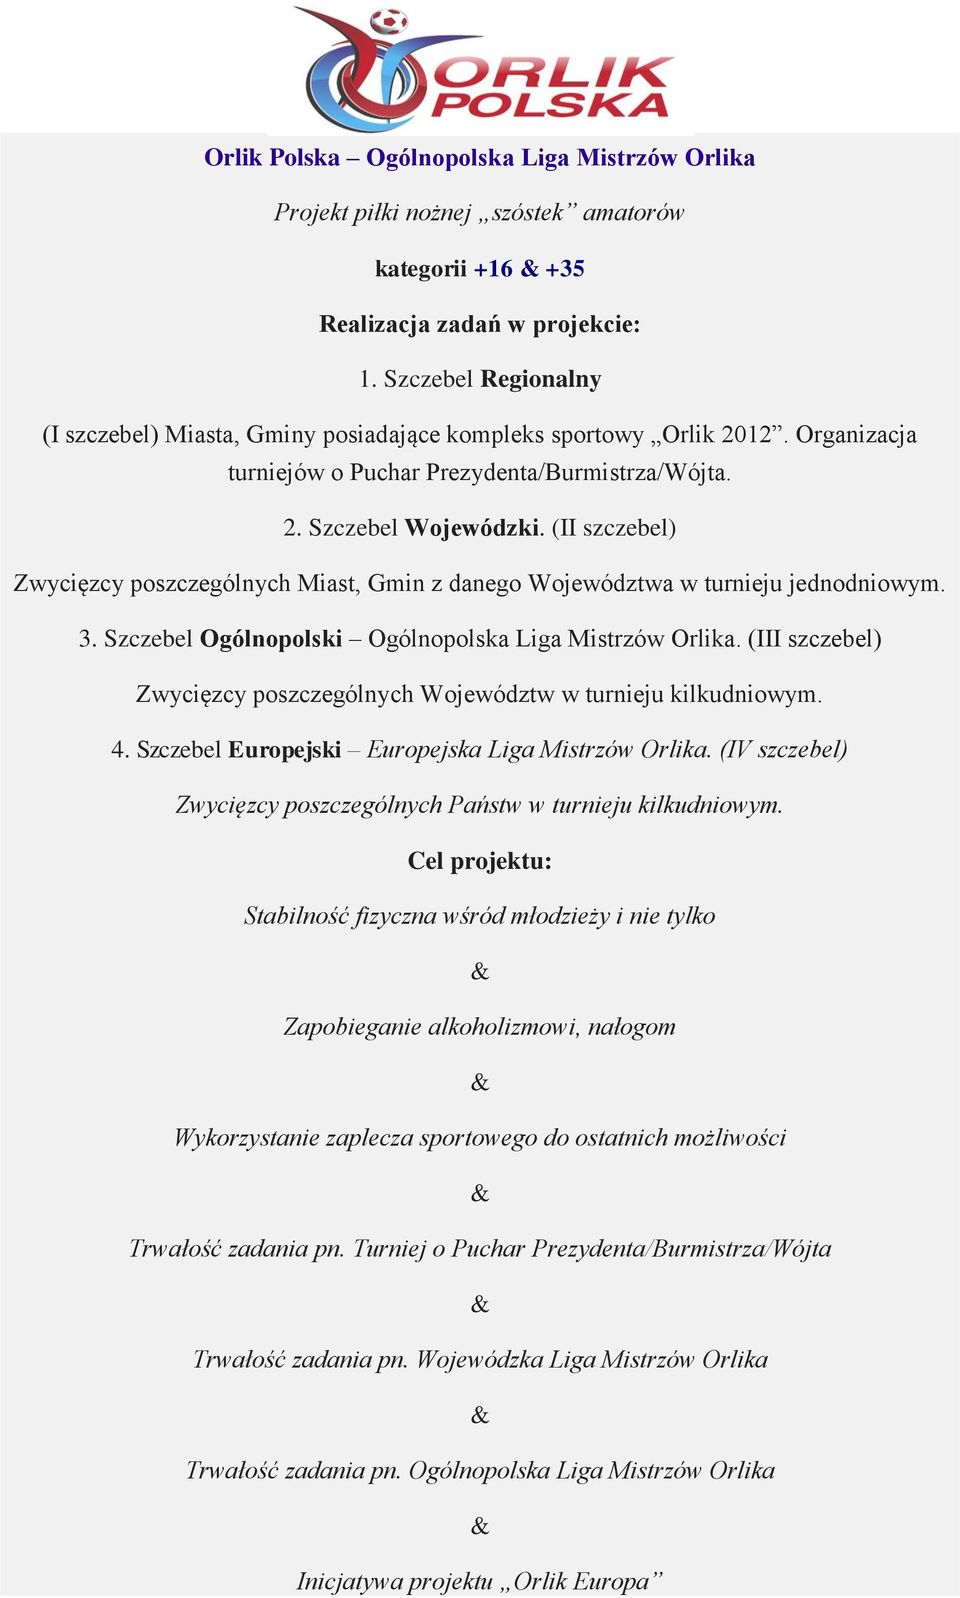 (II szczebel) Zwycięzcy poszczególnych Miast, Gmin z danego Województwa w turnieju jednodniowym. 3. Szczebel Ogólnopolski Ogólnopolska Liga Mistrzów Orlika.